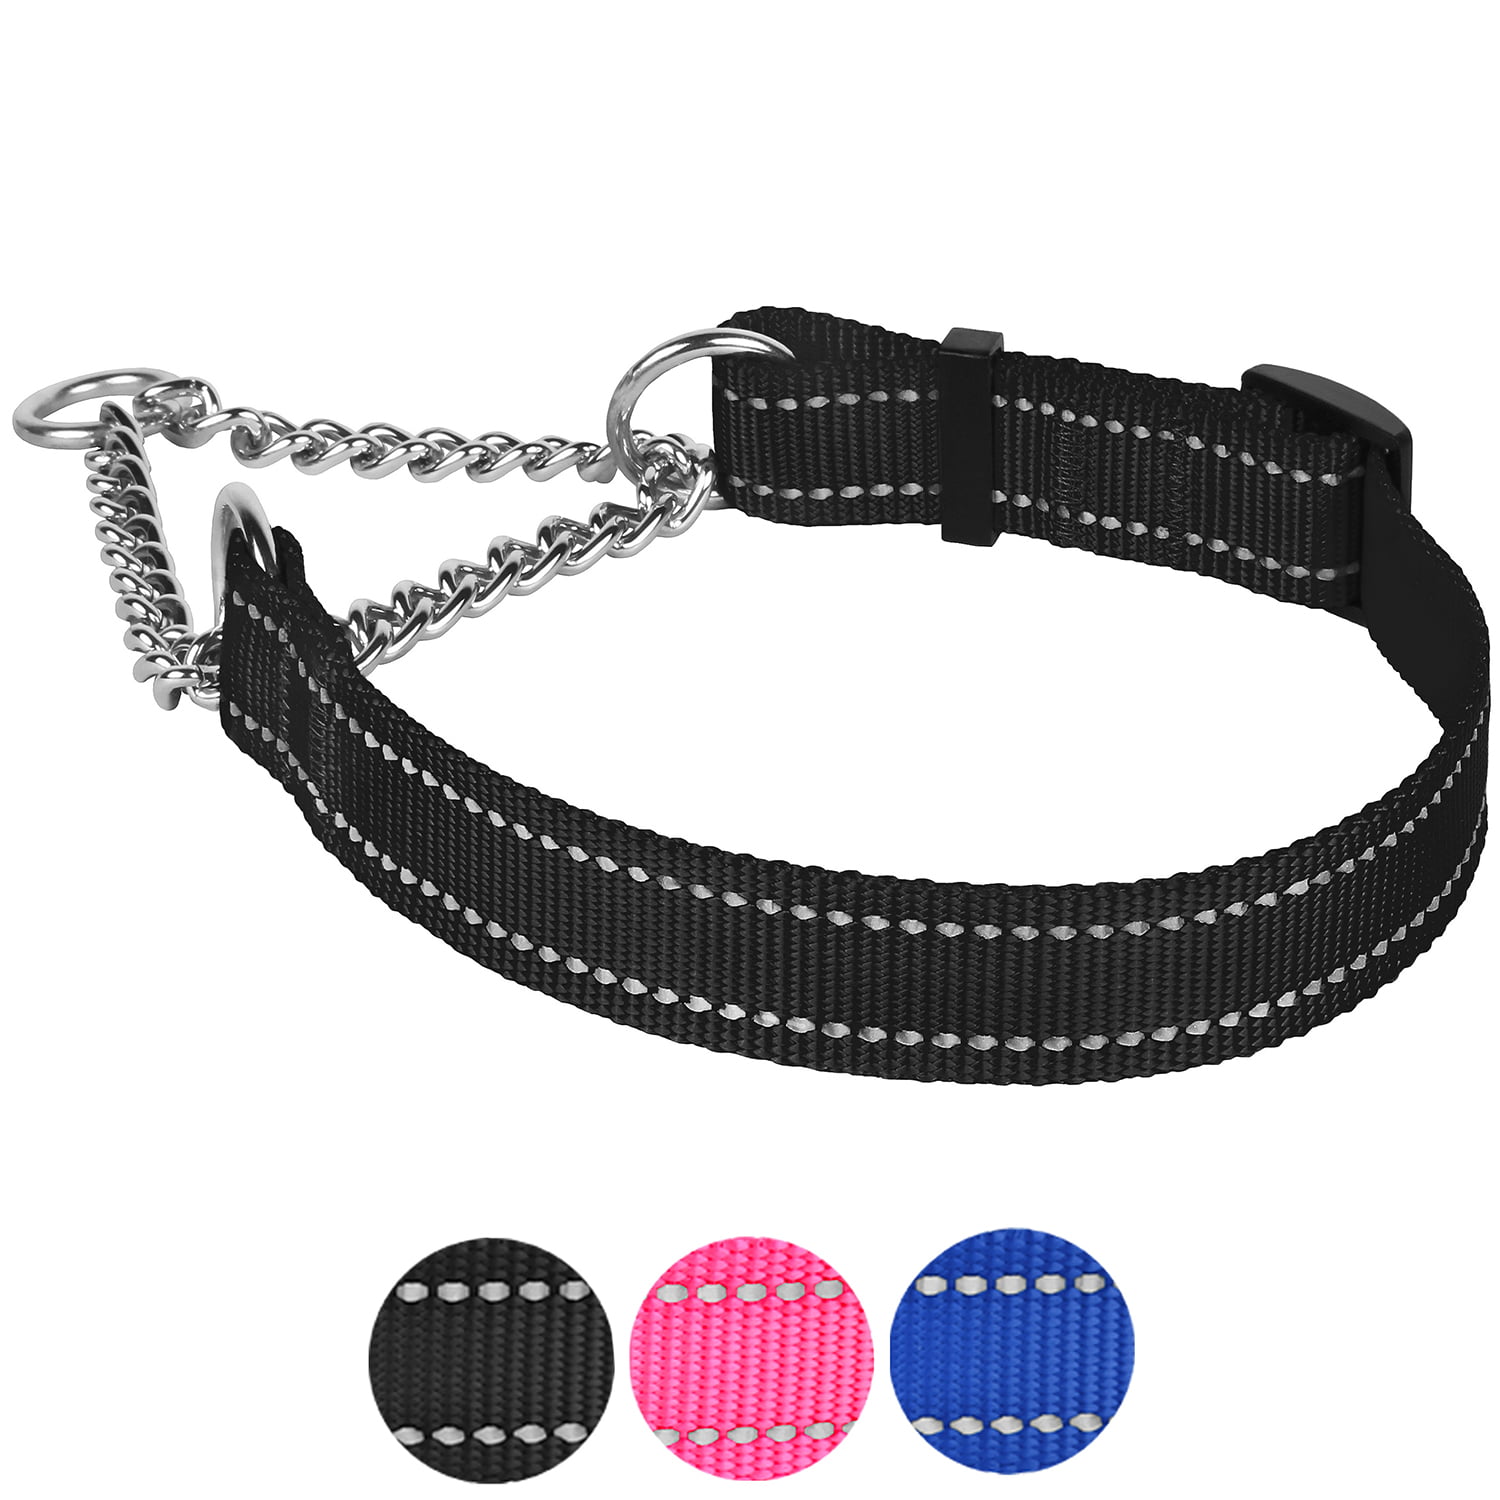 NEW Black Nylon Round Braided Dog Choke Collar 23" Large 